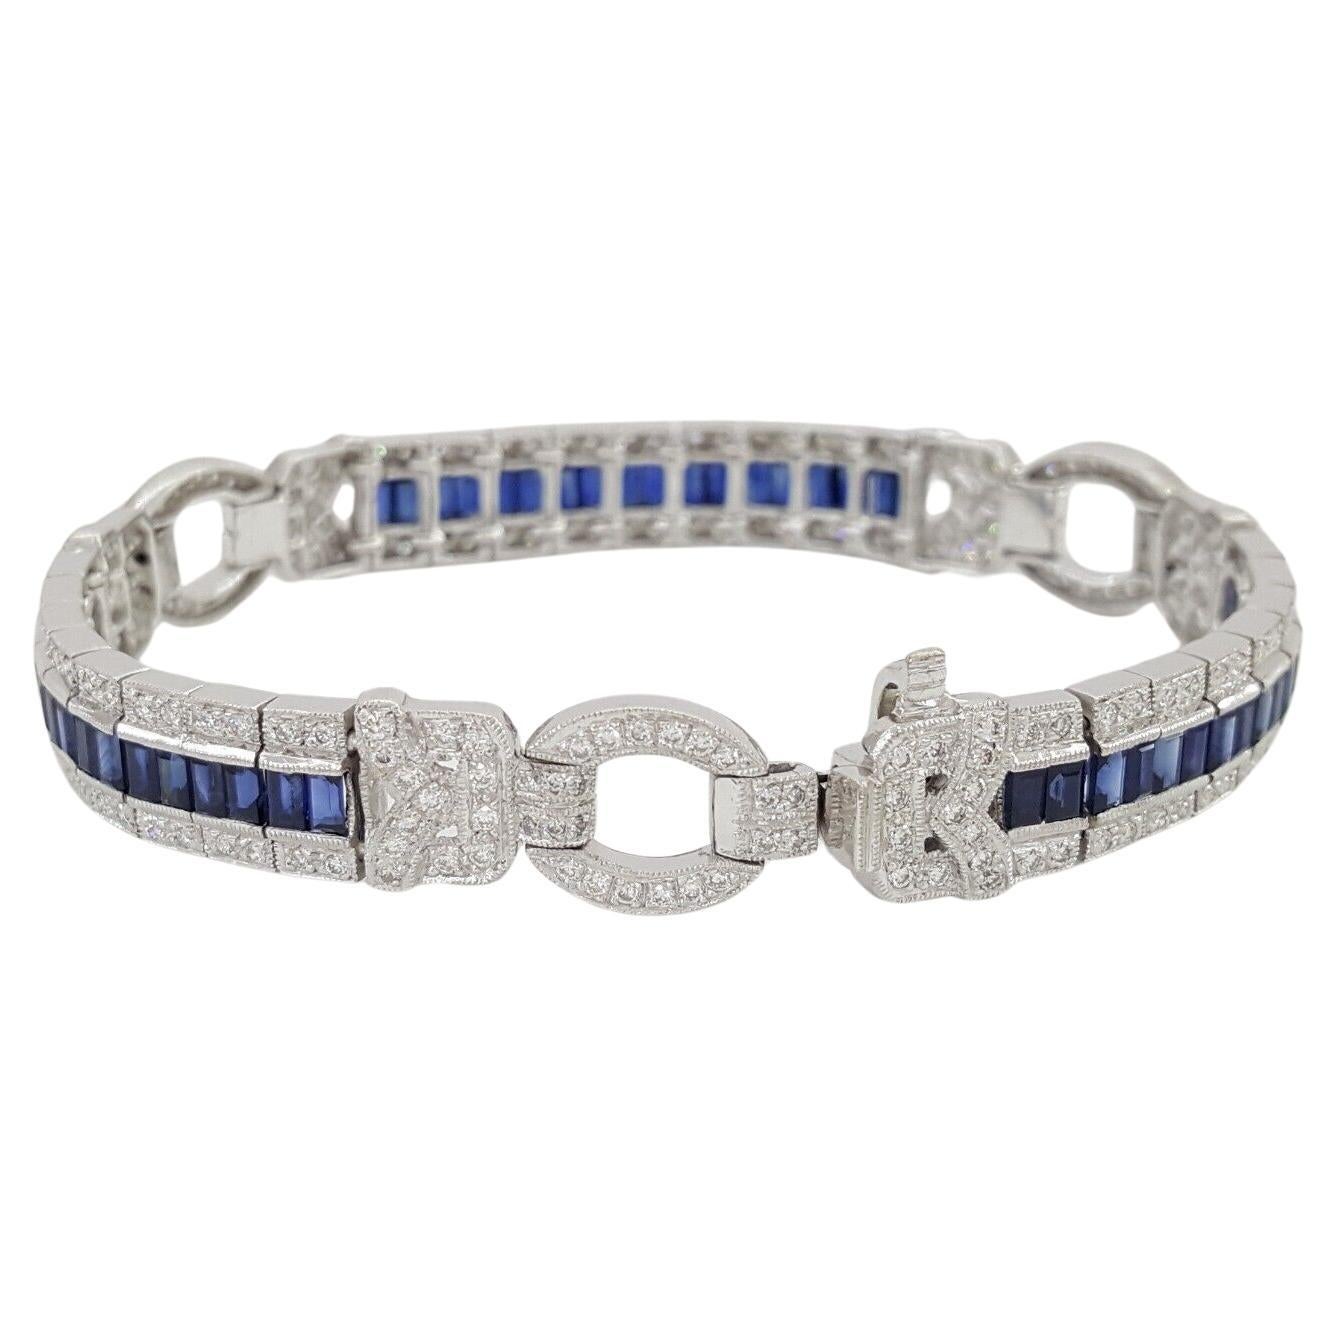 Voici une pièce exquise d'une élégance intemporelle : voici notre authentique bracelet vintage en or blanc 18 carats, orné d'une combinaison captivante de diamants ronds et brillants et de saphirs bleus.

Réalisé à la perfection, ce bracelet est